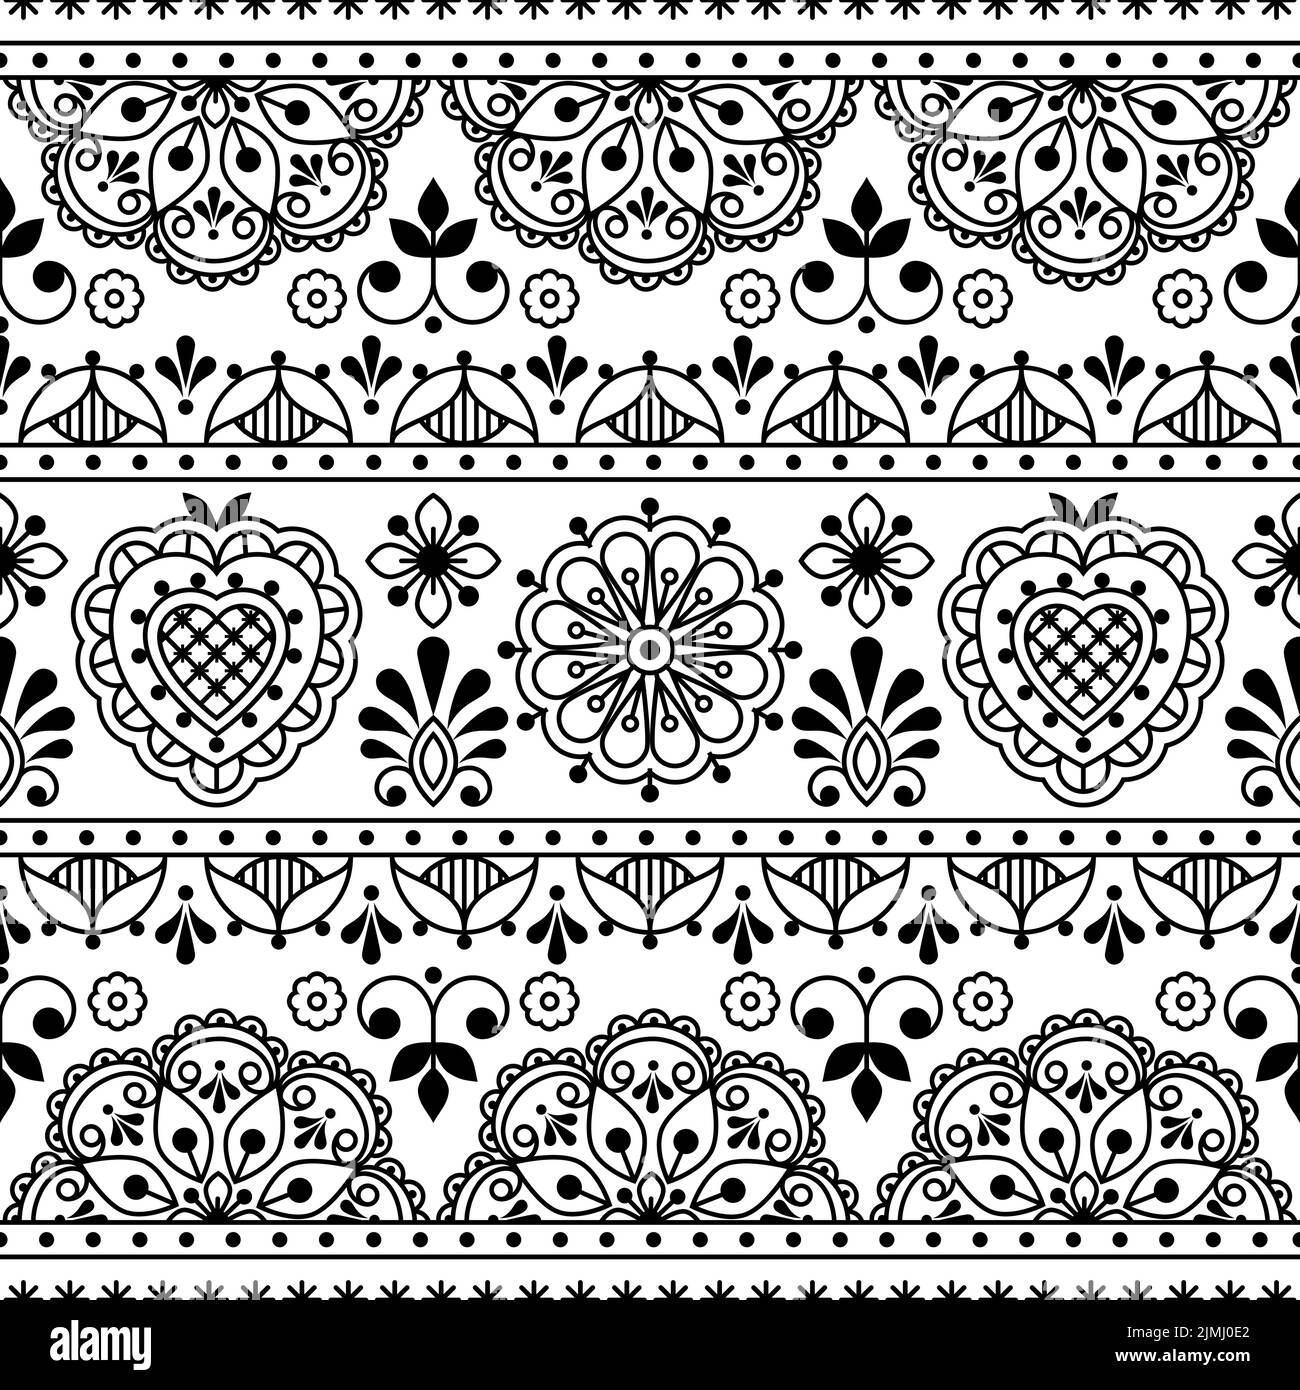 Skandinavische Volkskunst skizzieren Vektor nahtlose Textil- oder Stoffdruck, schwarz-weiß repetitve Design mit Blumen inspiriert von Spitze und Stickerei b Stock Vektor